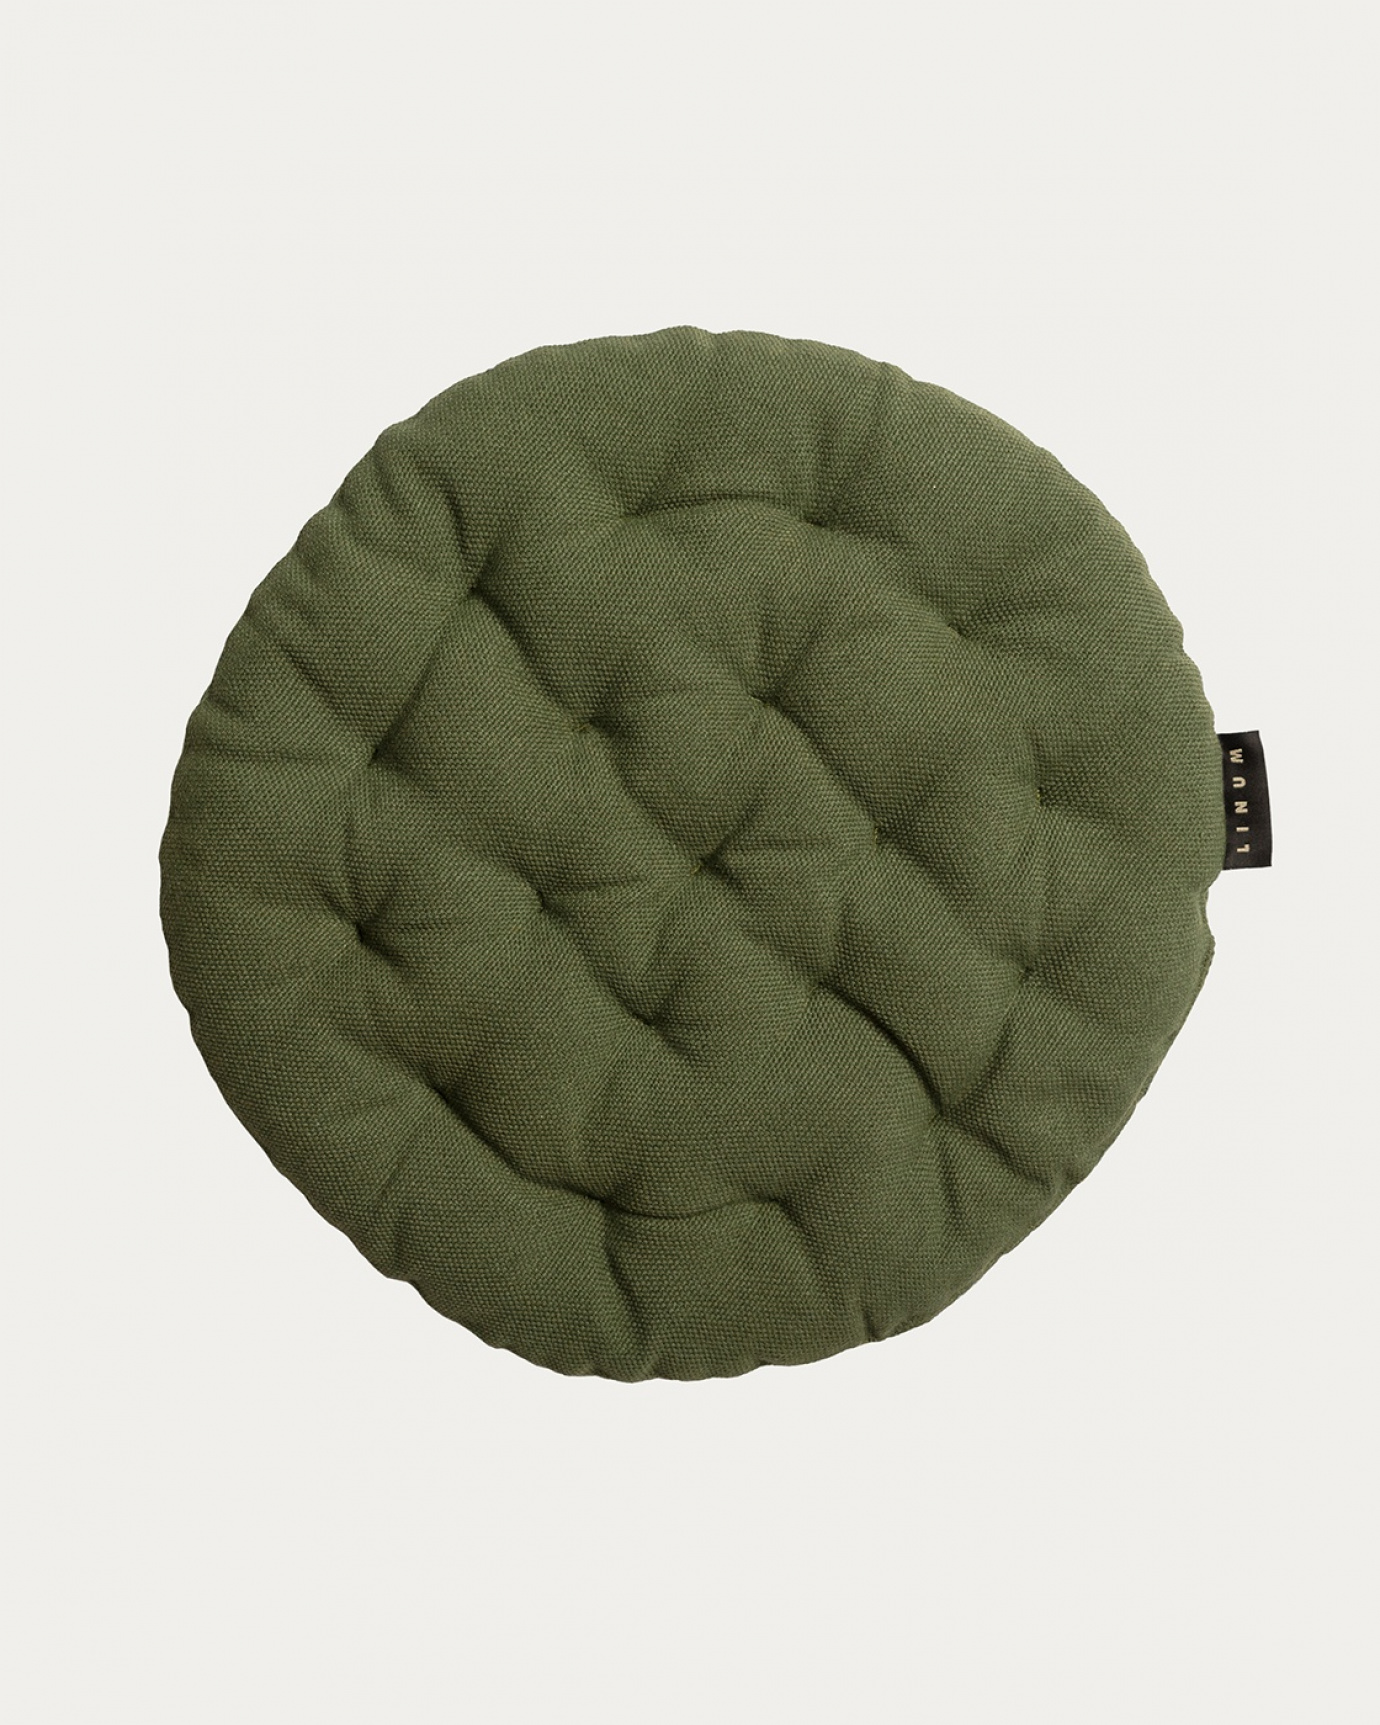 Produktbild dunkles olivgrün PEPPER Sitzkissen aus weicher Baumwolle mit Füllung aus recyceltem Polyester von LINUM DESIGN. Größe ø37 cm.